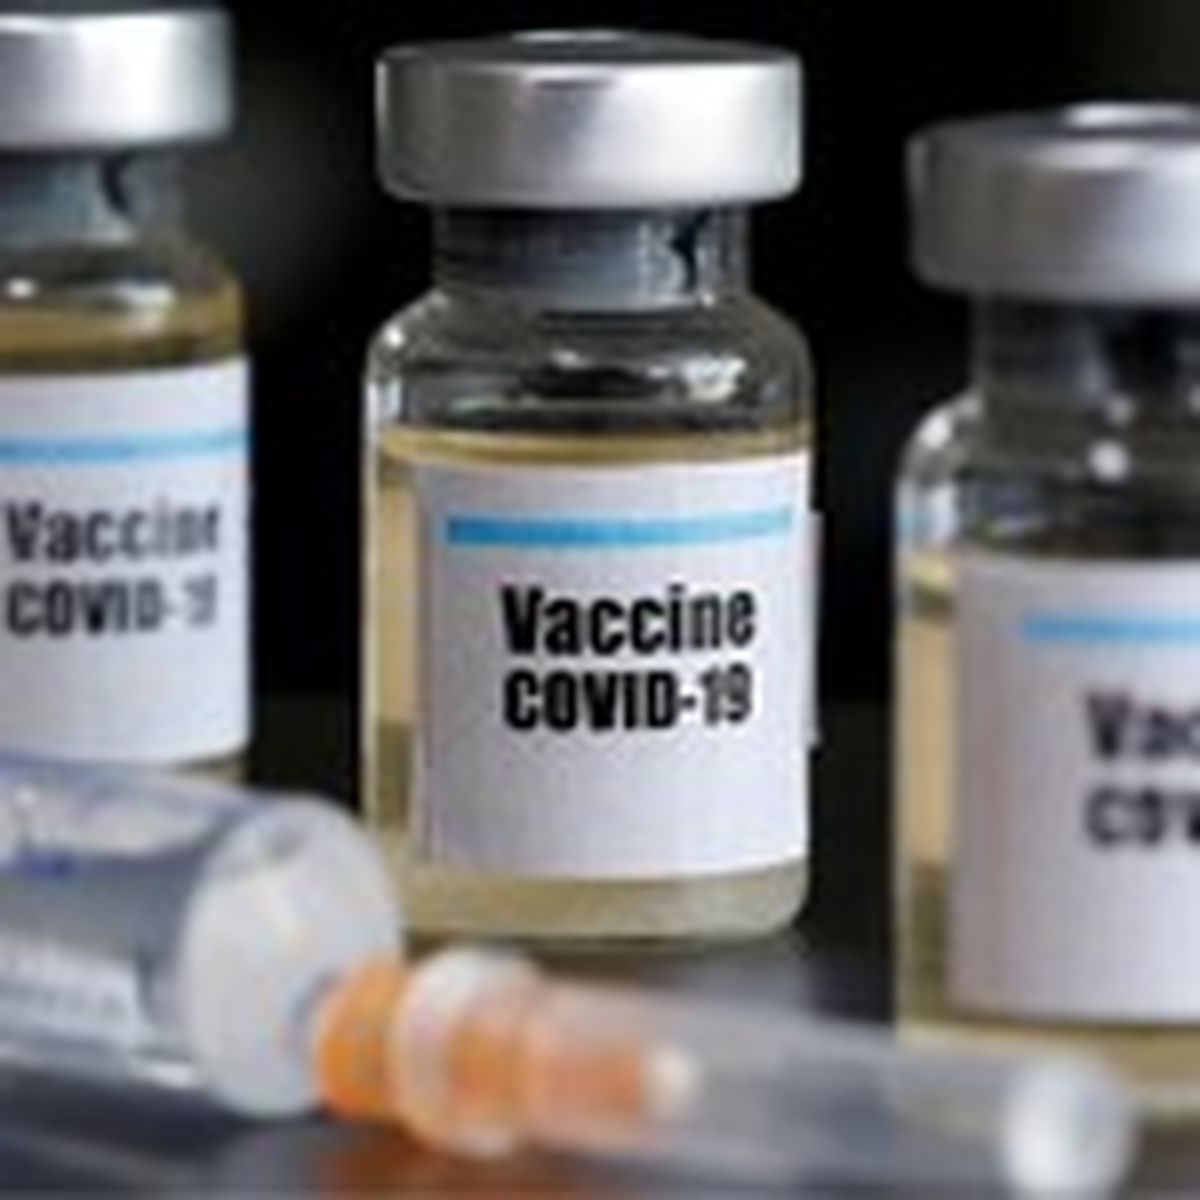 پایگاه واکسیناسیون بیمارستان محک آغاز به کار کرد